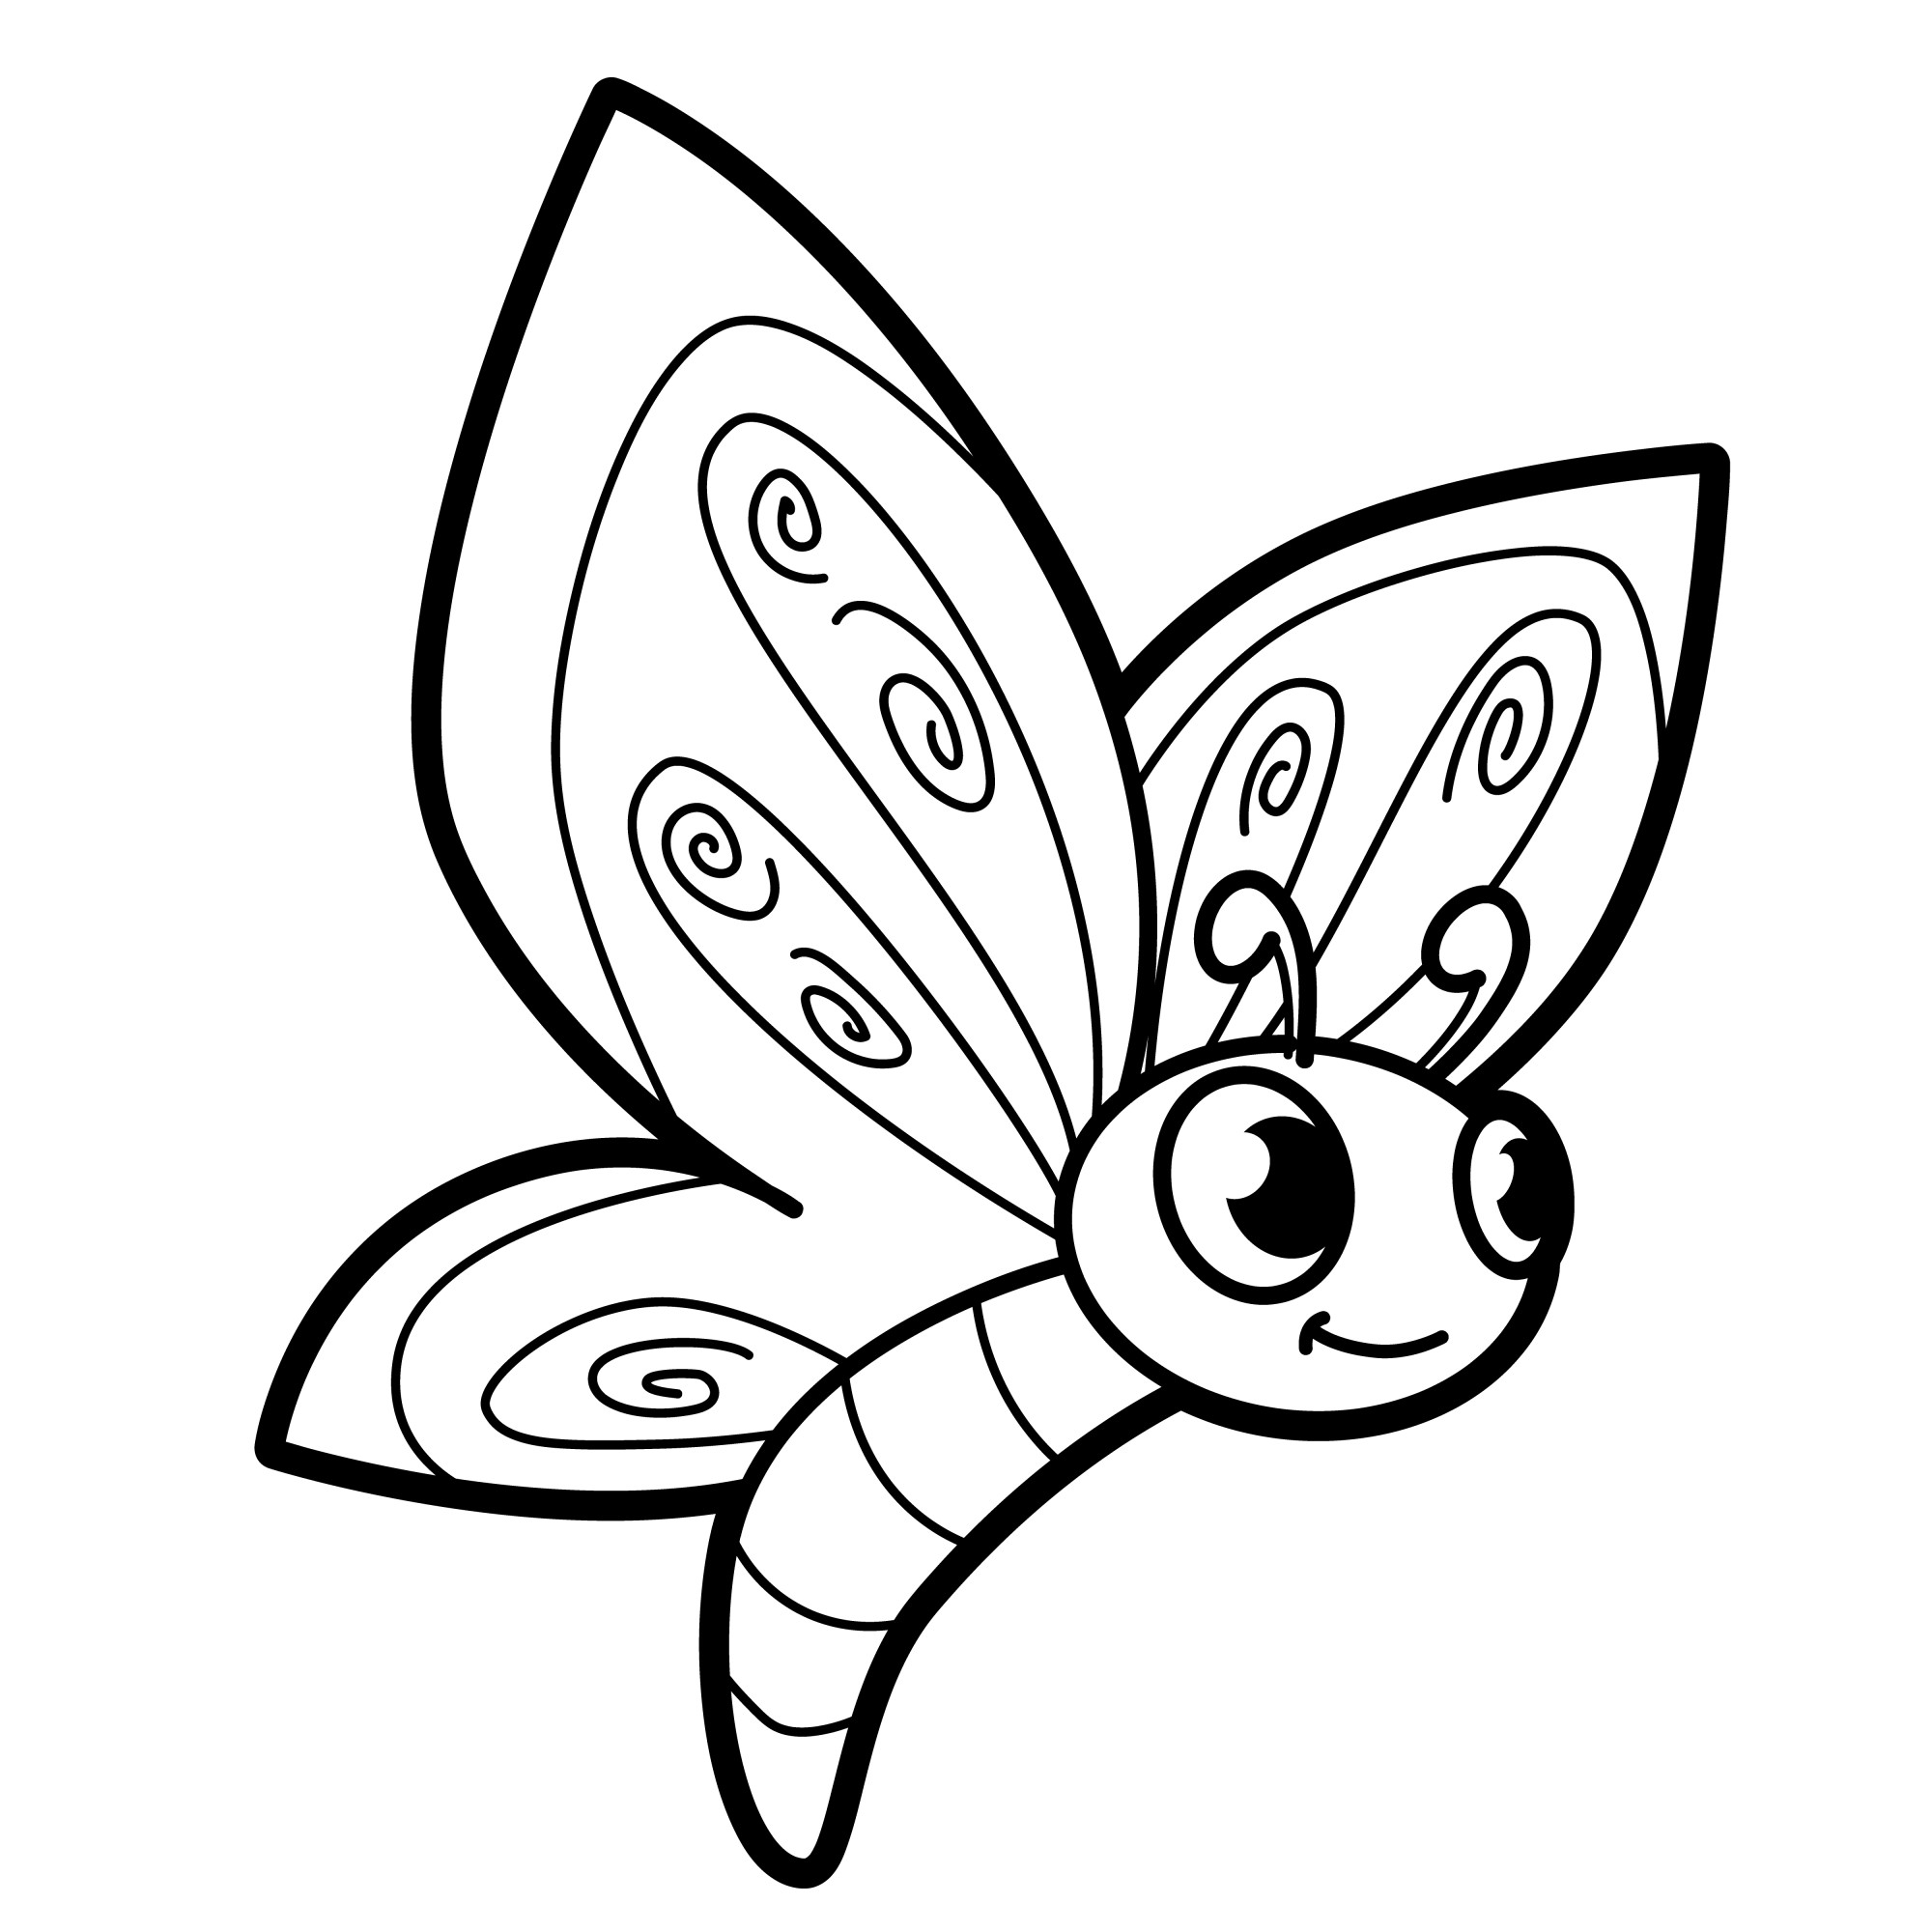 Раскраска для детей: маленькая мультяшная бабочка с большими глазами